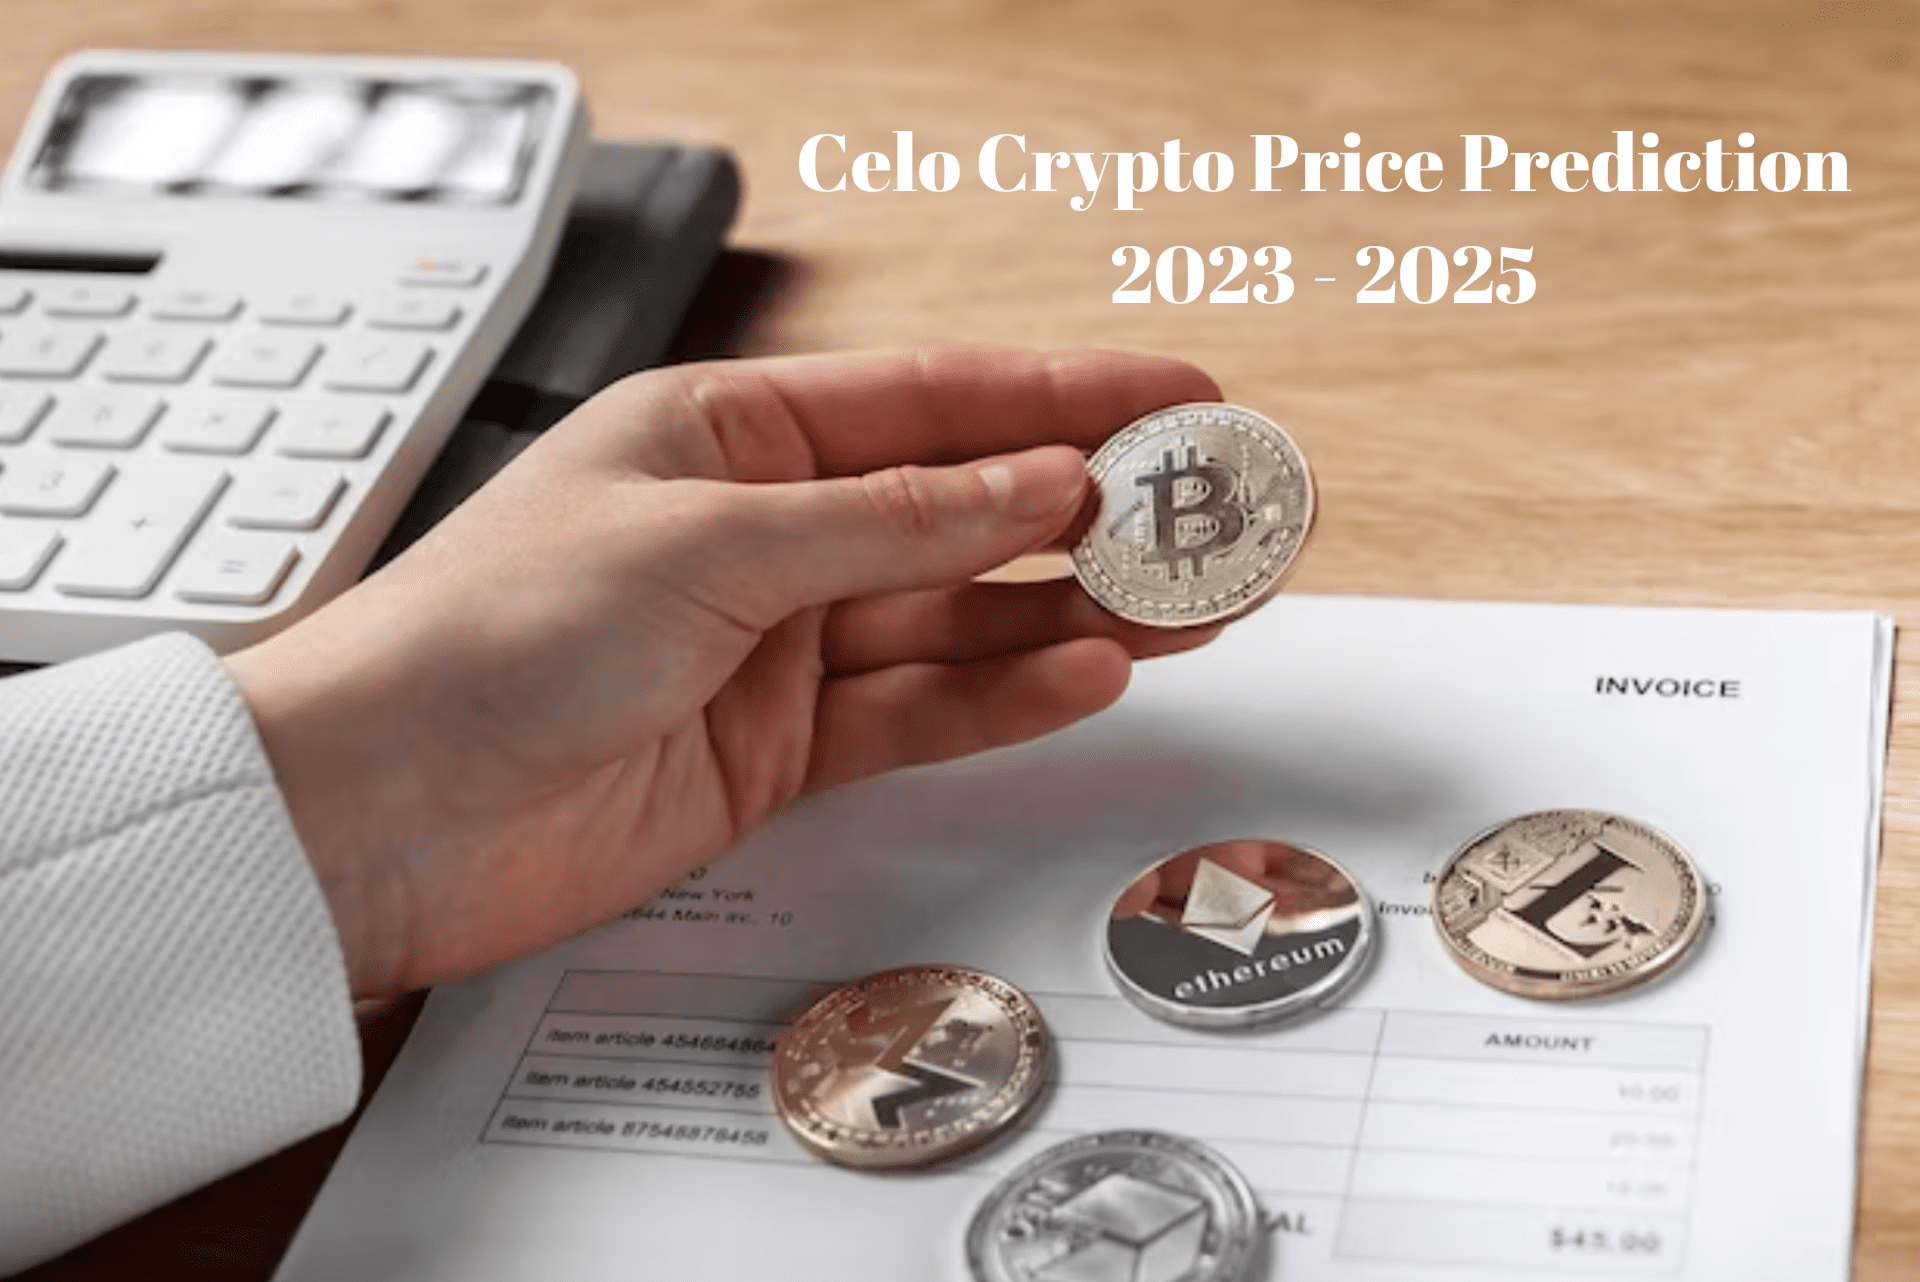 Celo Crypto Price Prediction